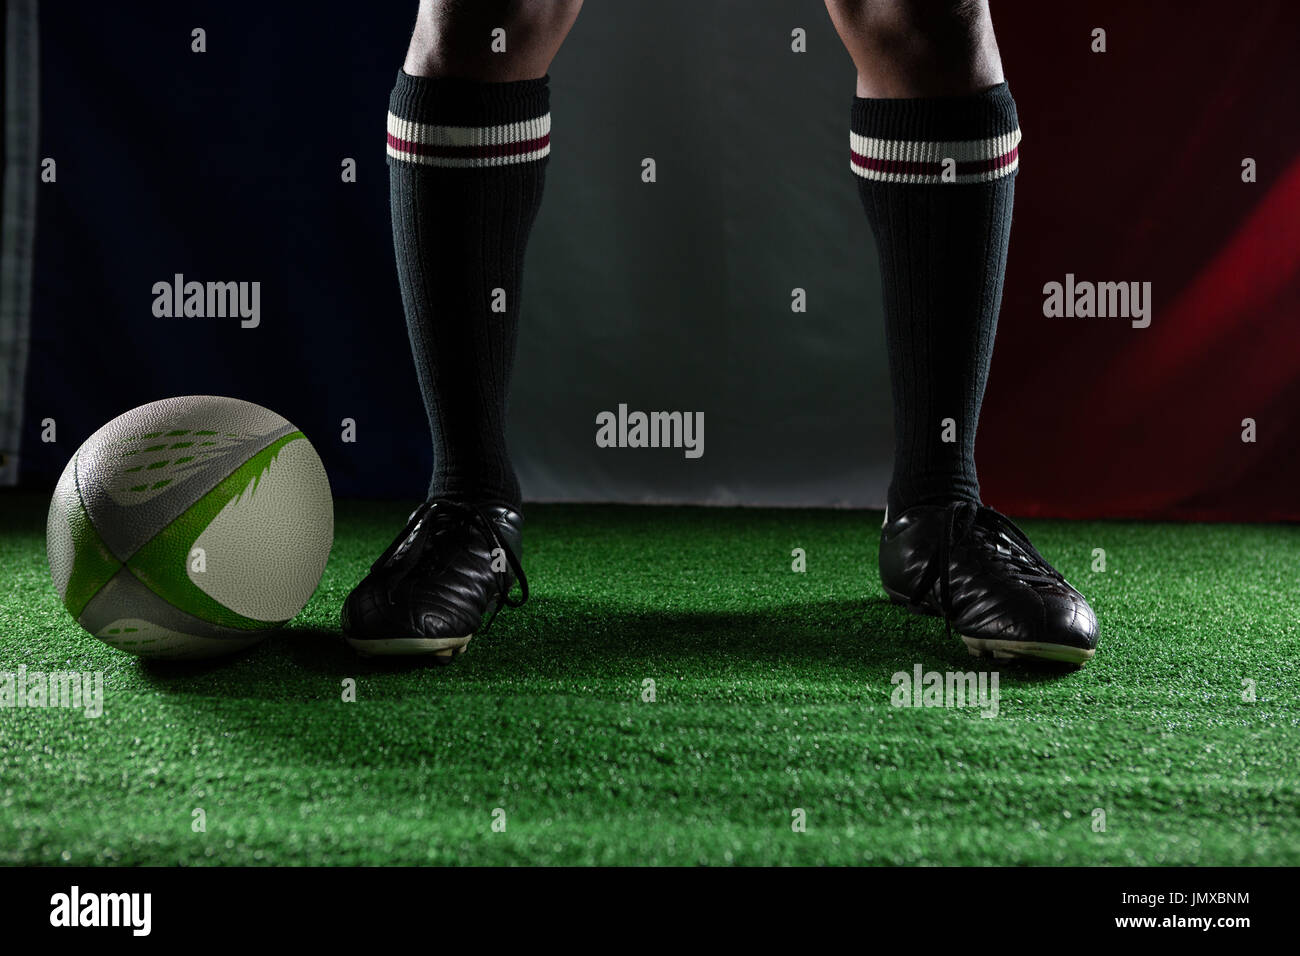 Niedrige Teil der Rugby-Spieler auf auffangene gegen italienische Flagge stehend Stockfoto